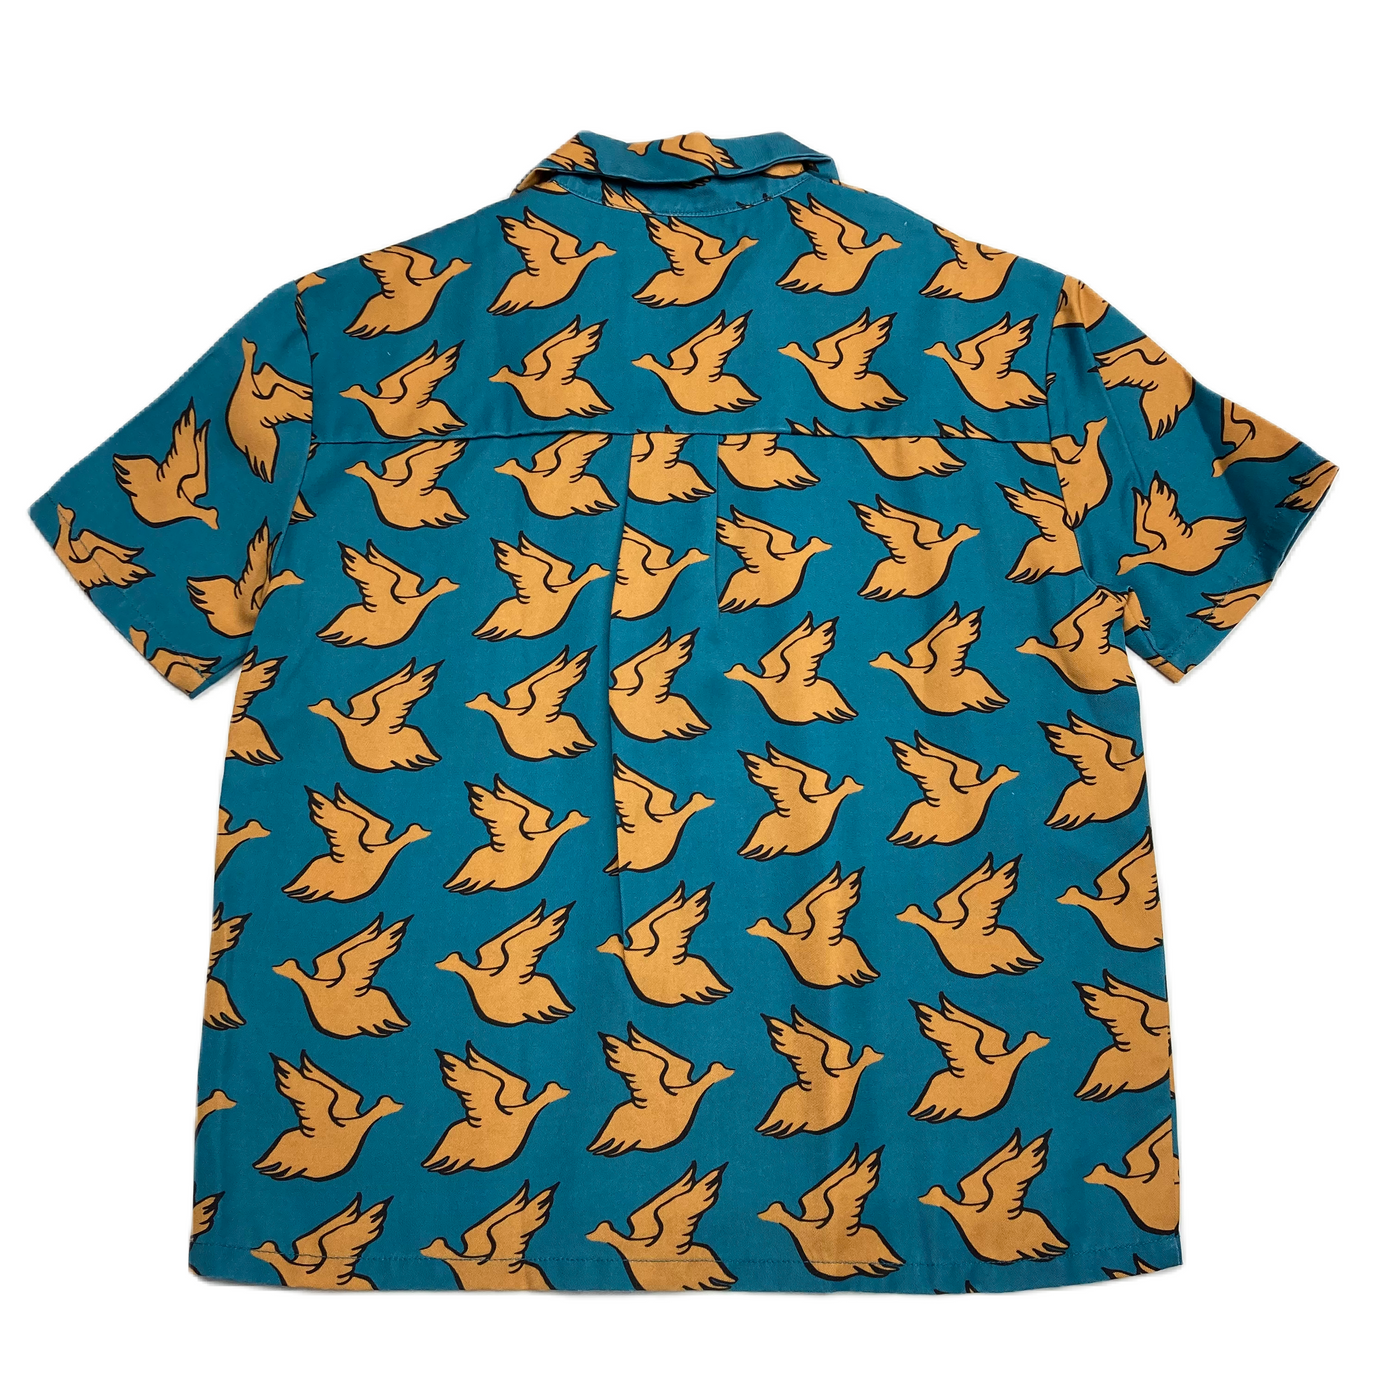 Repose AMS - Shirt Birds 8y